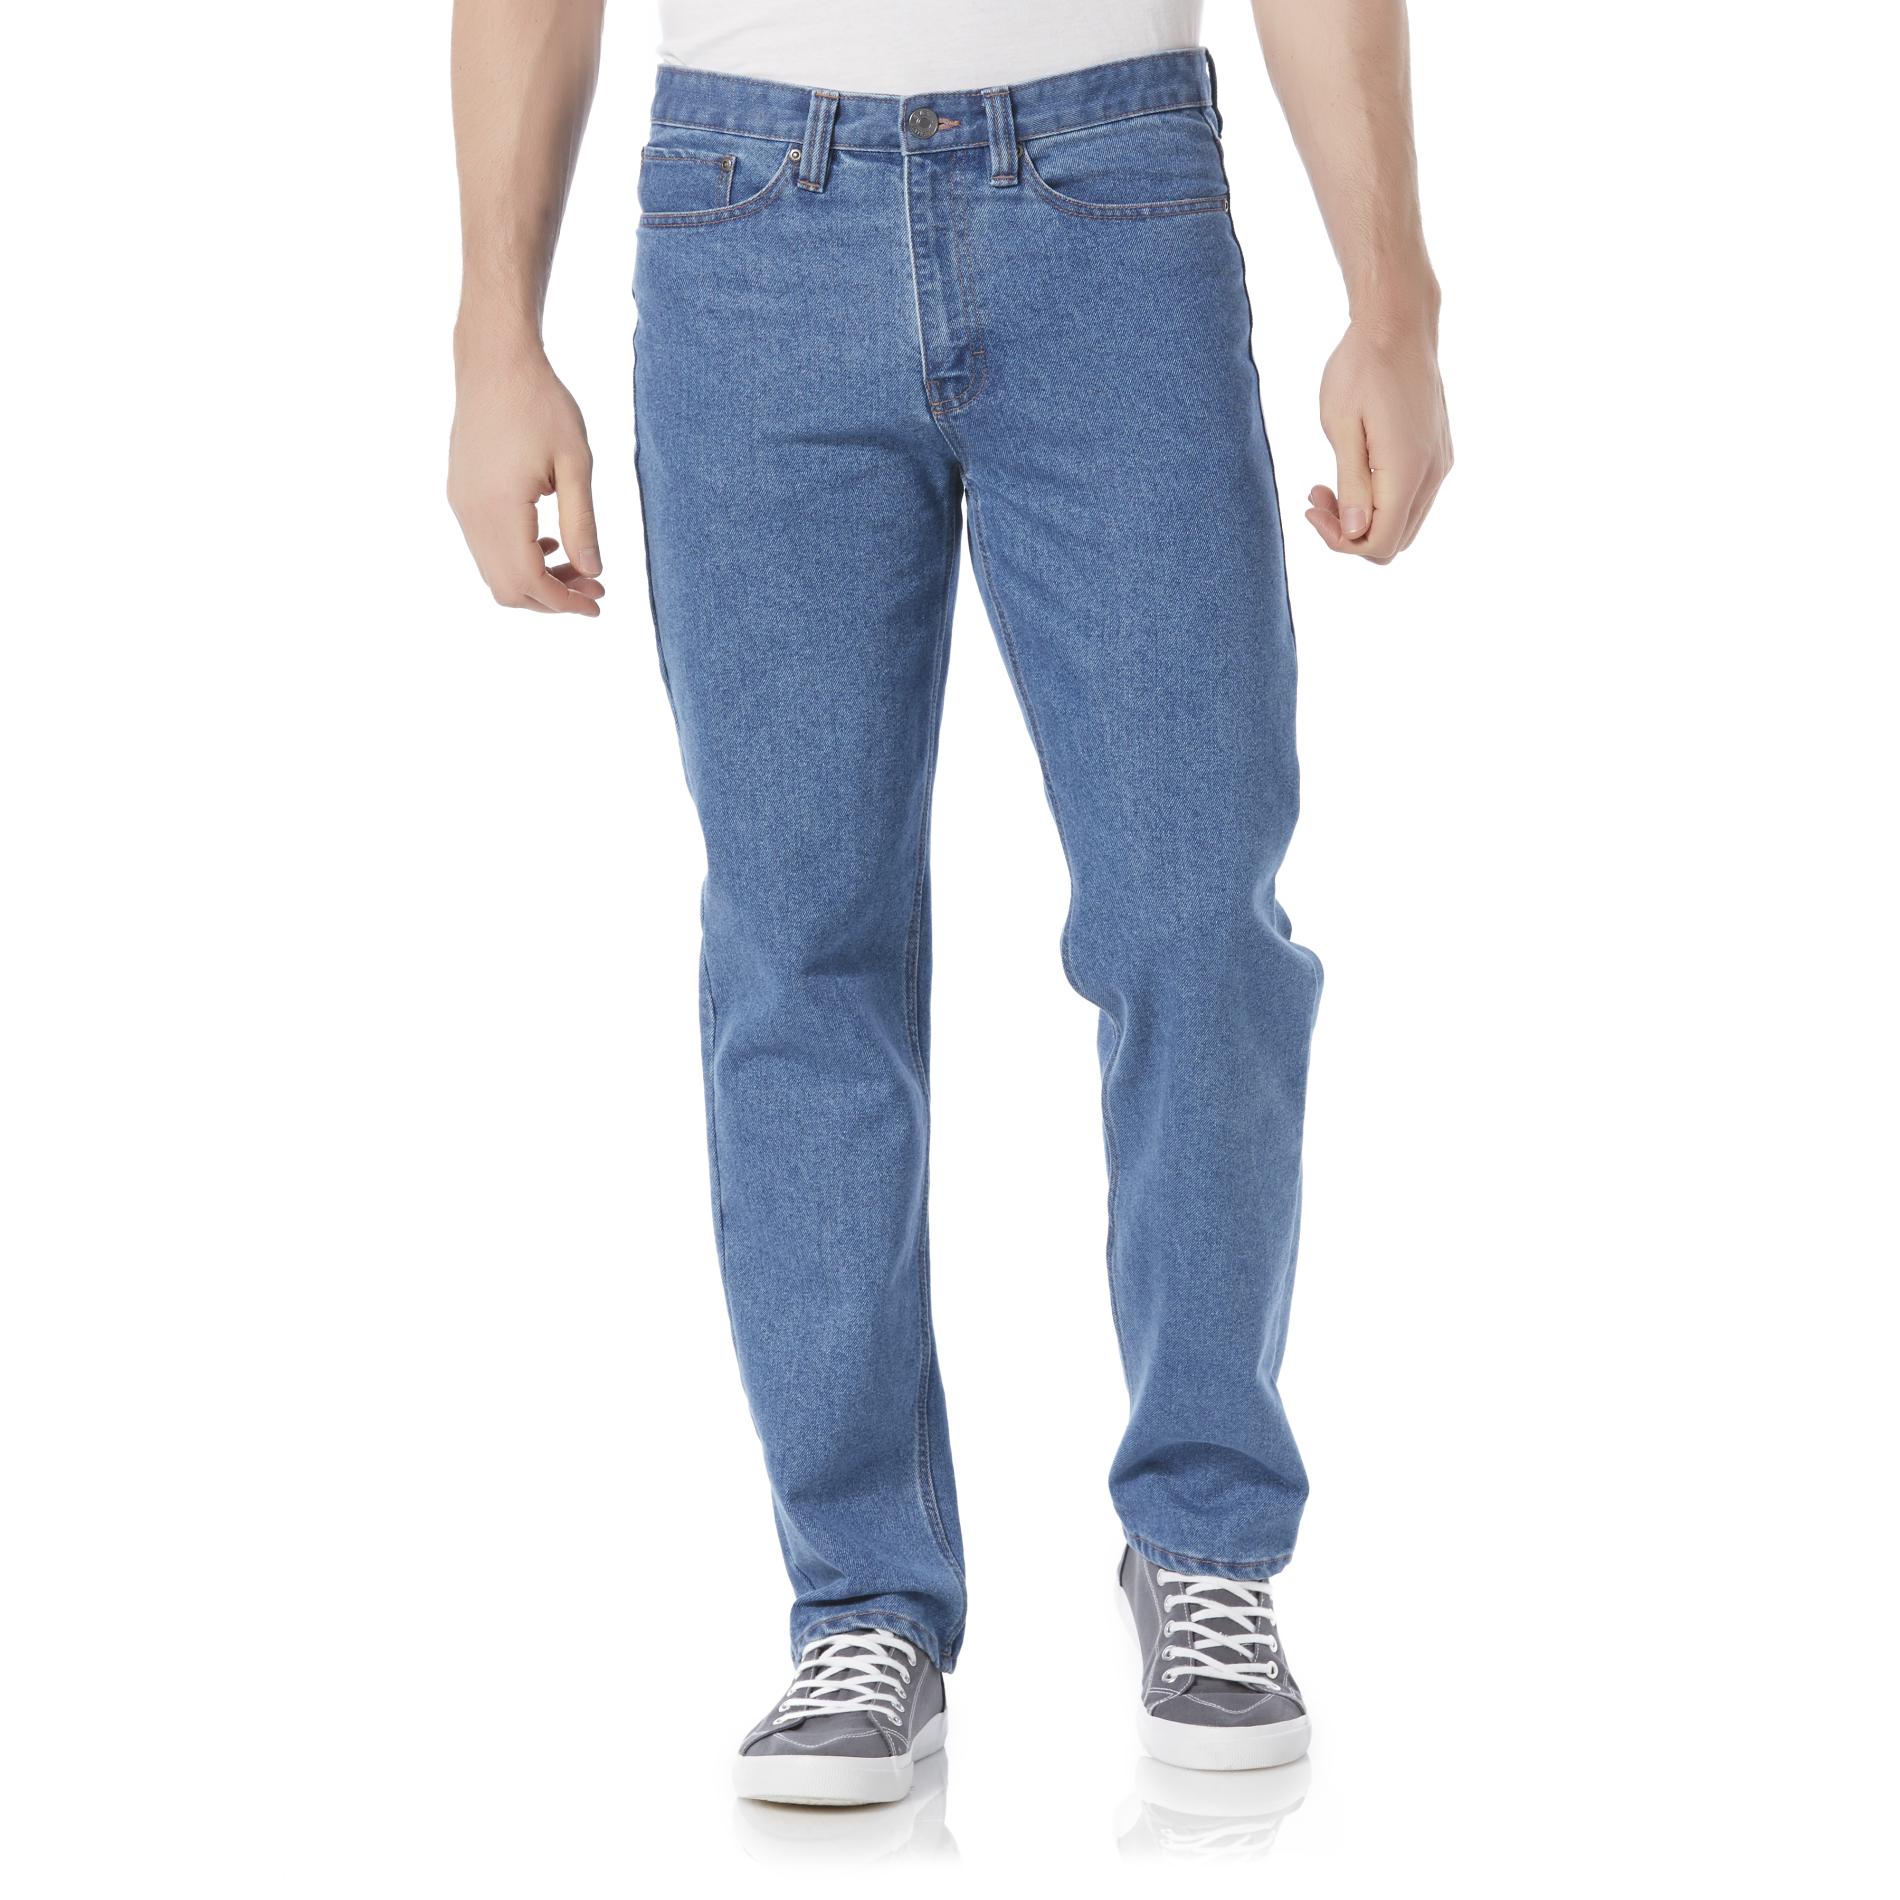 mens white jeans kmart